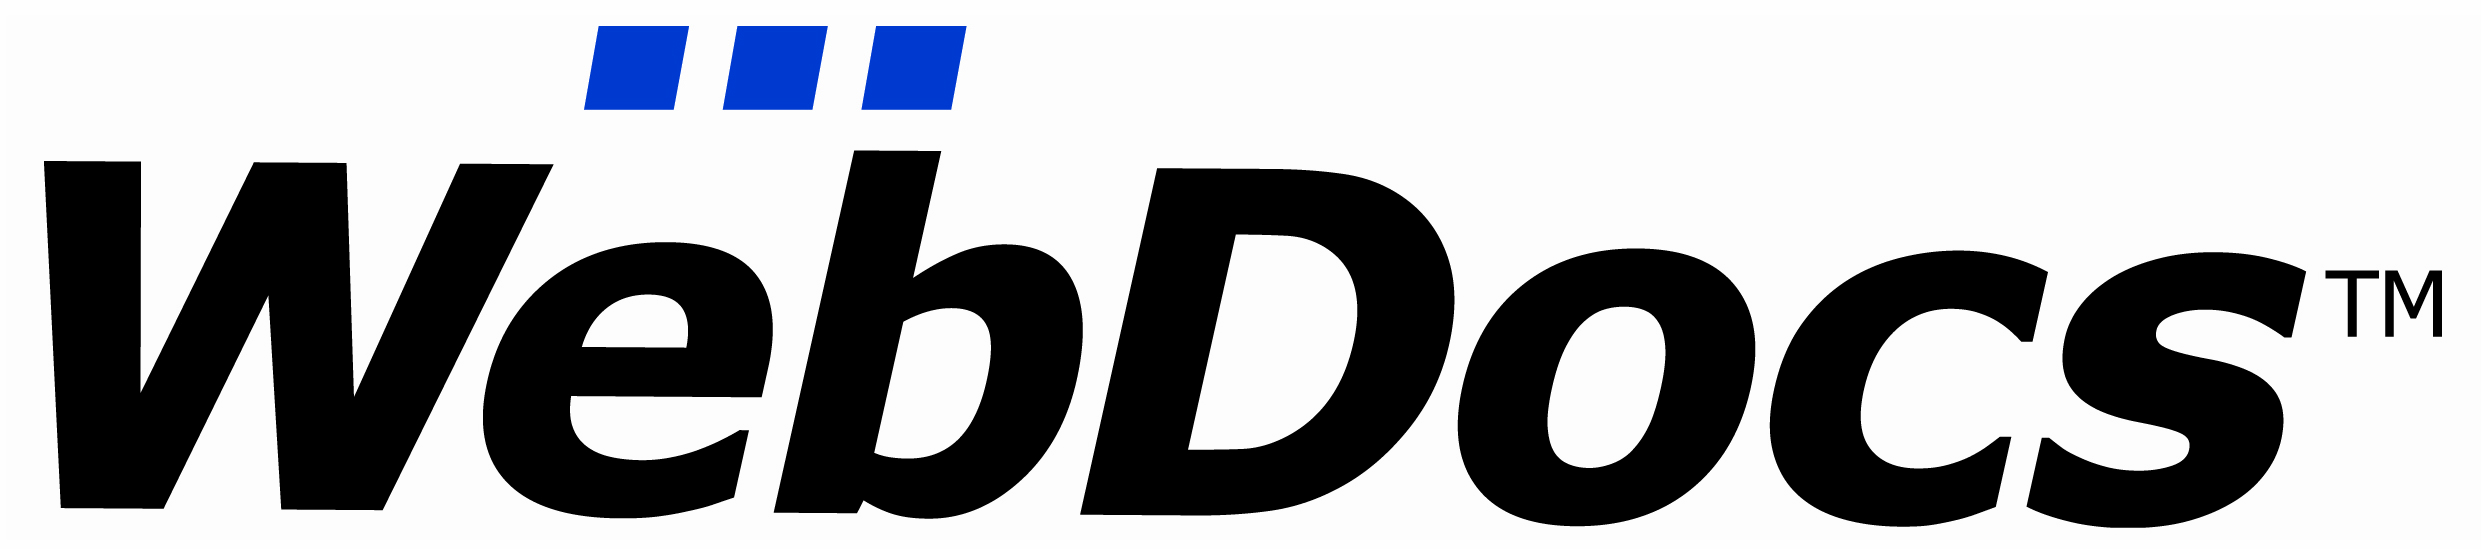 WebDocs Logo Large'